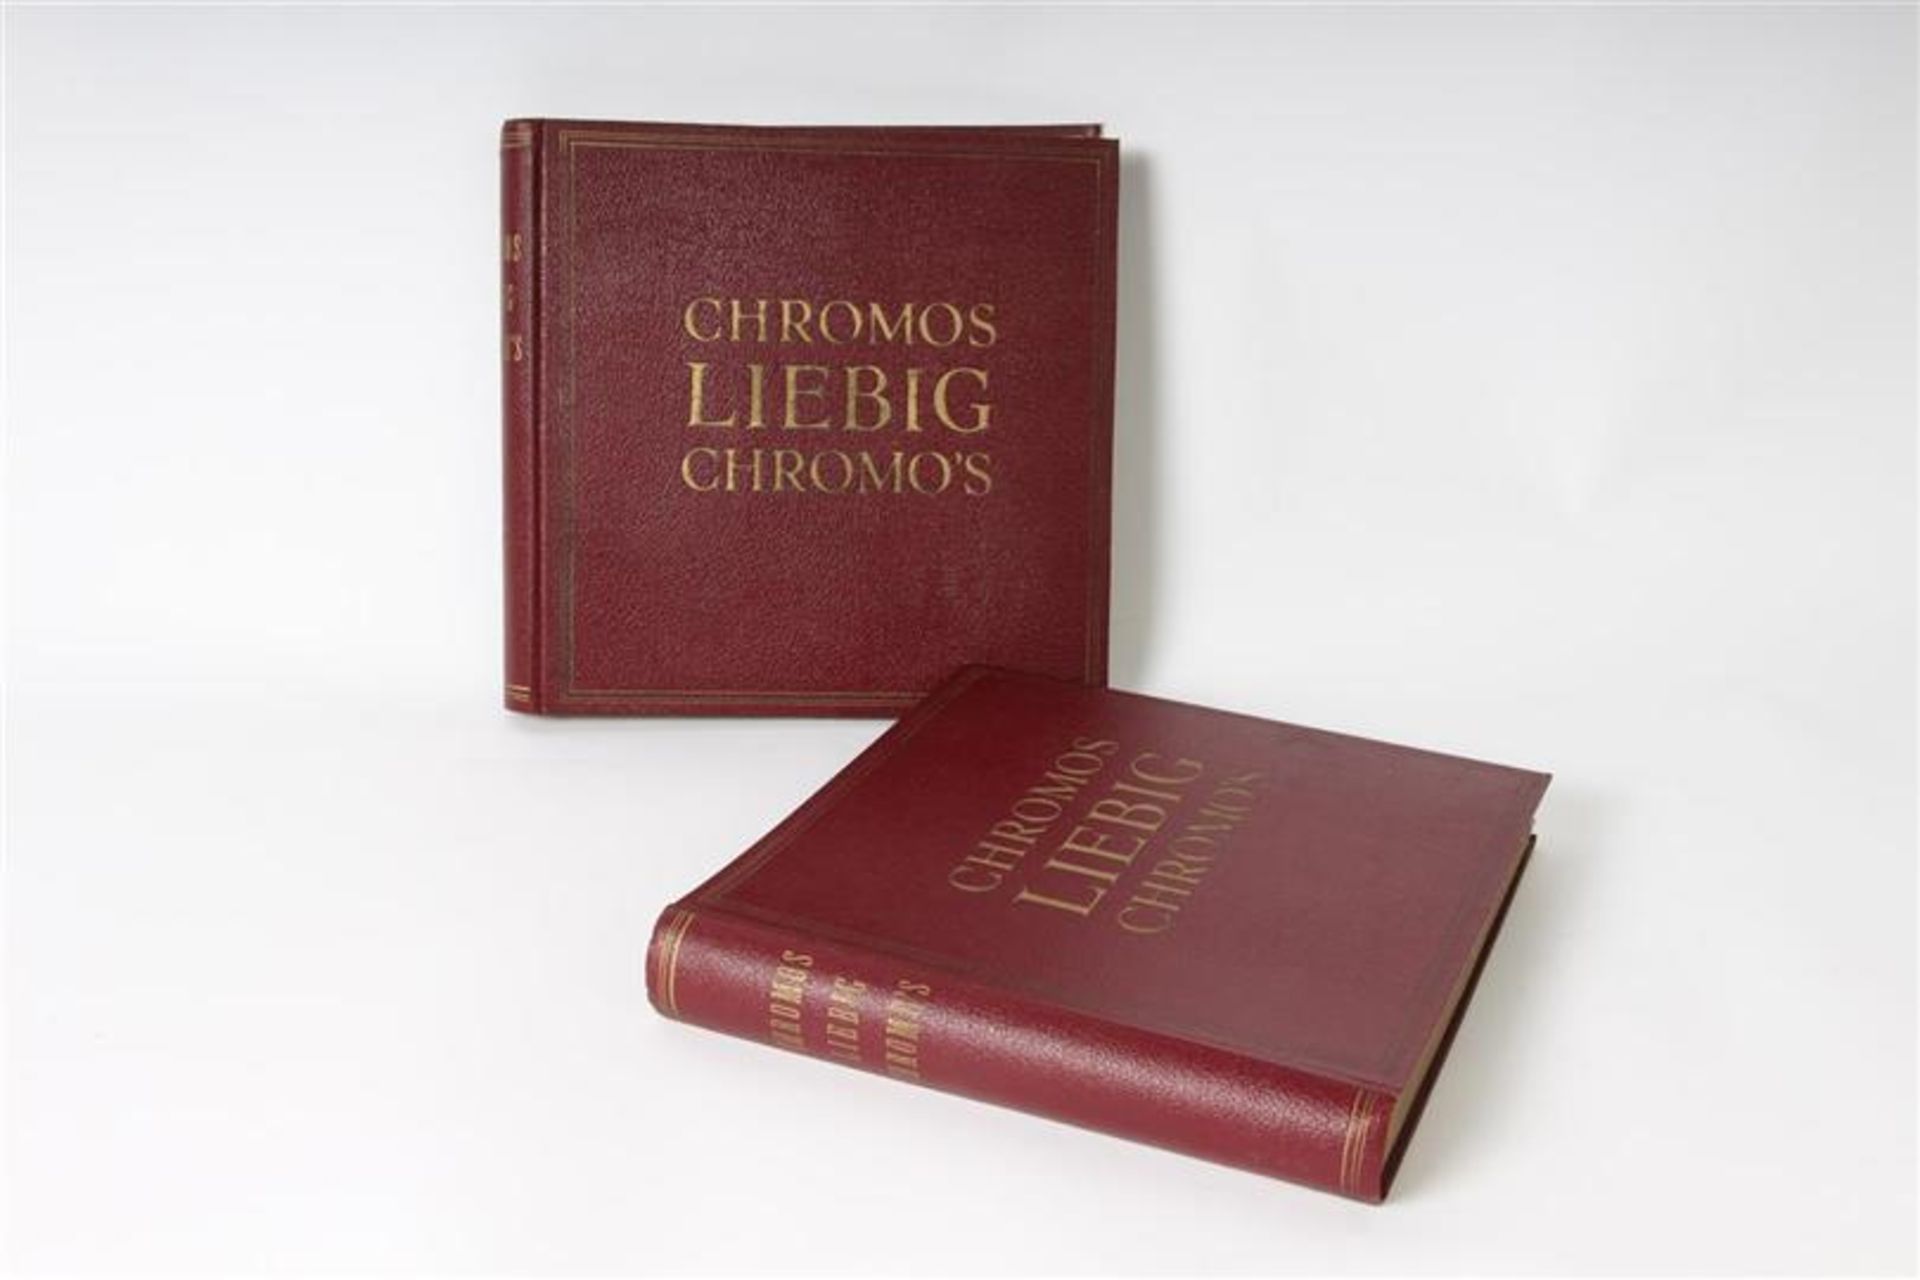 Twee albums met Chromos Liebig plaatjes.